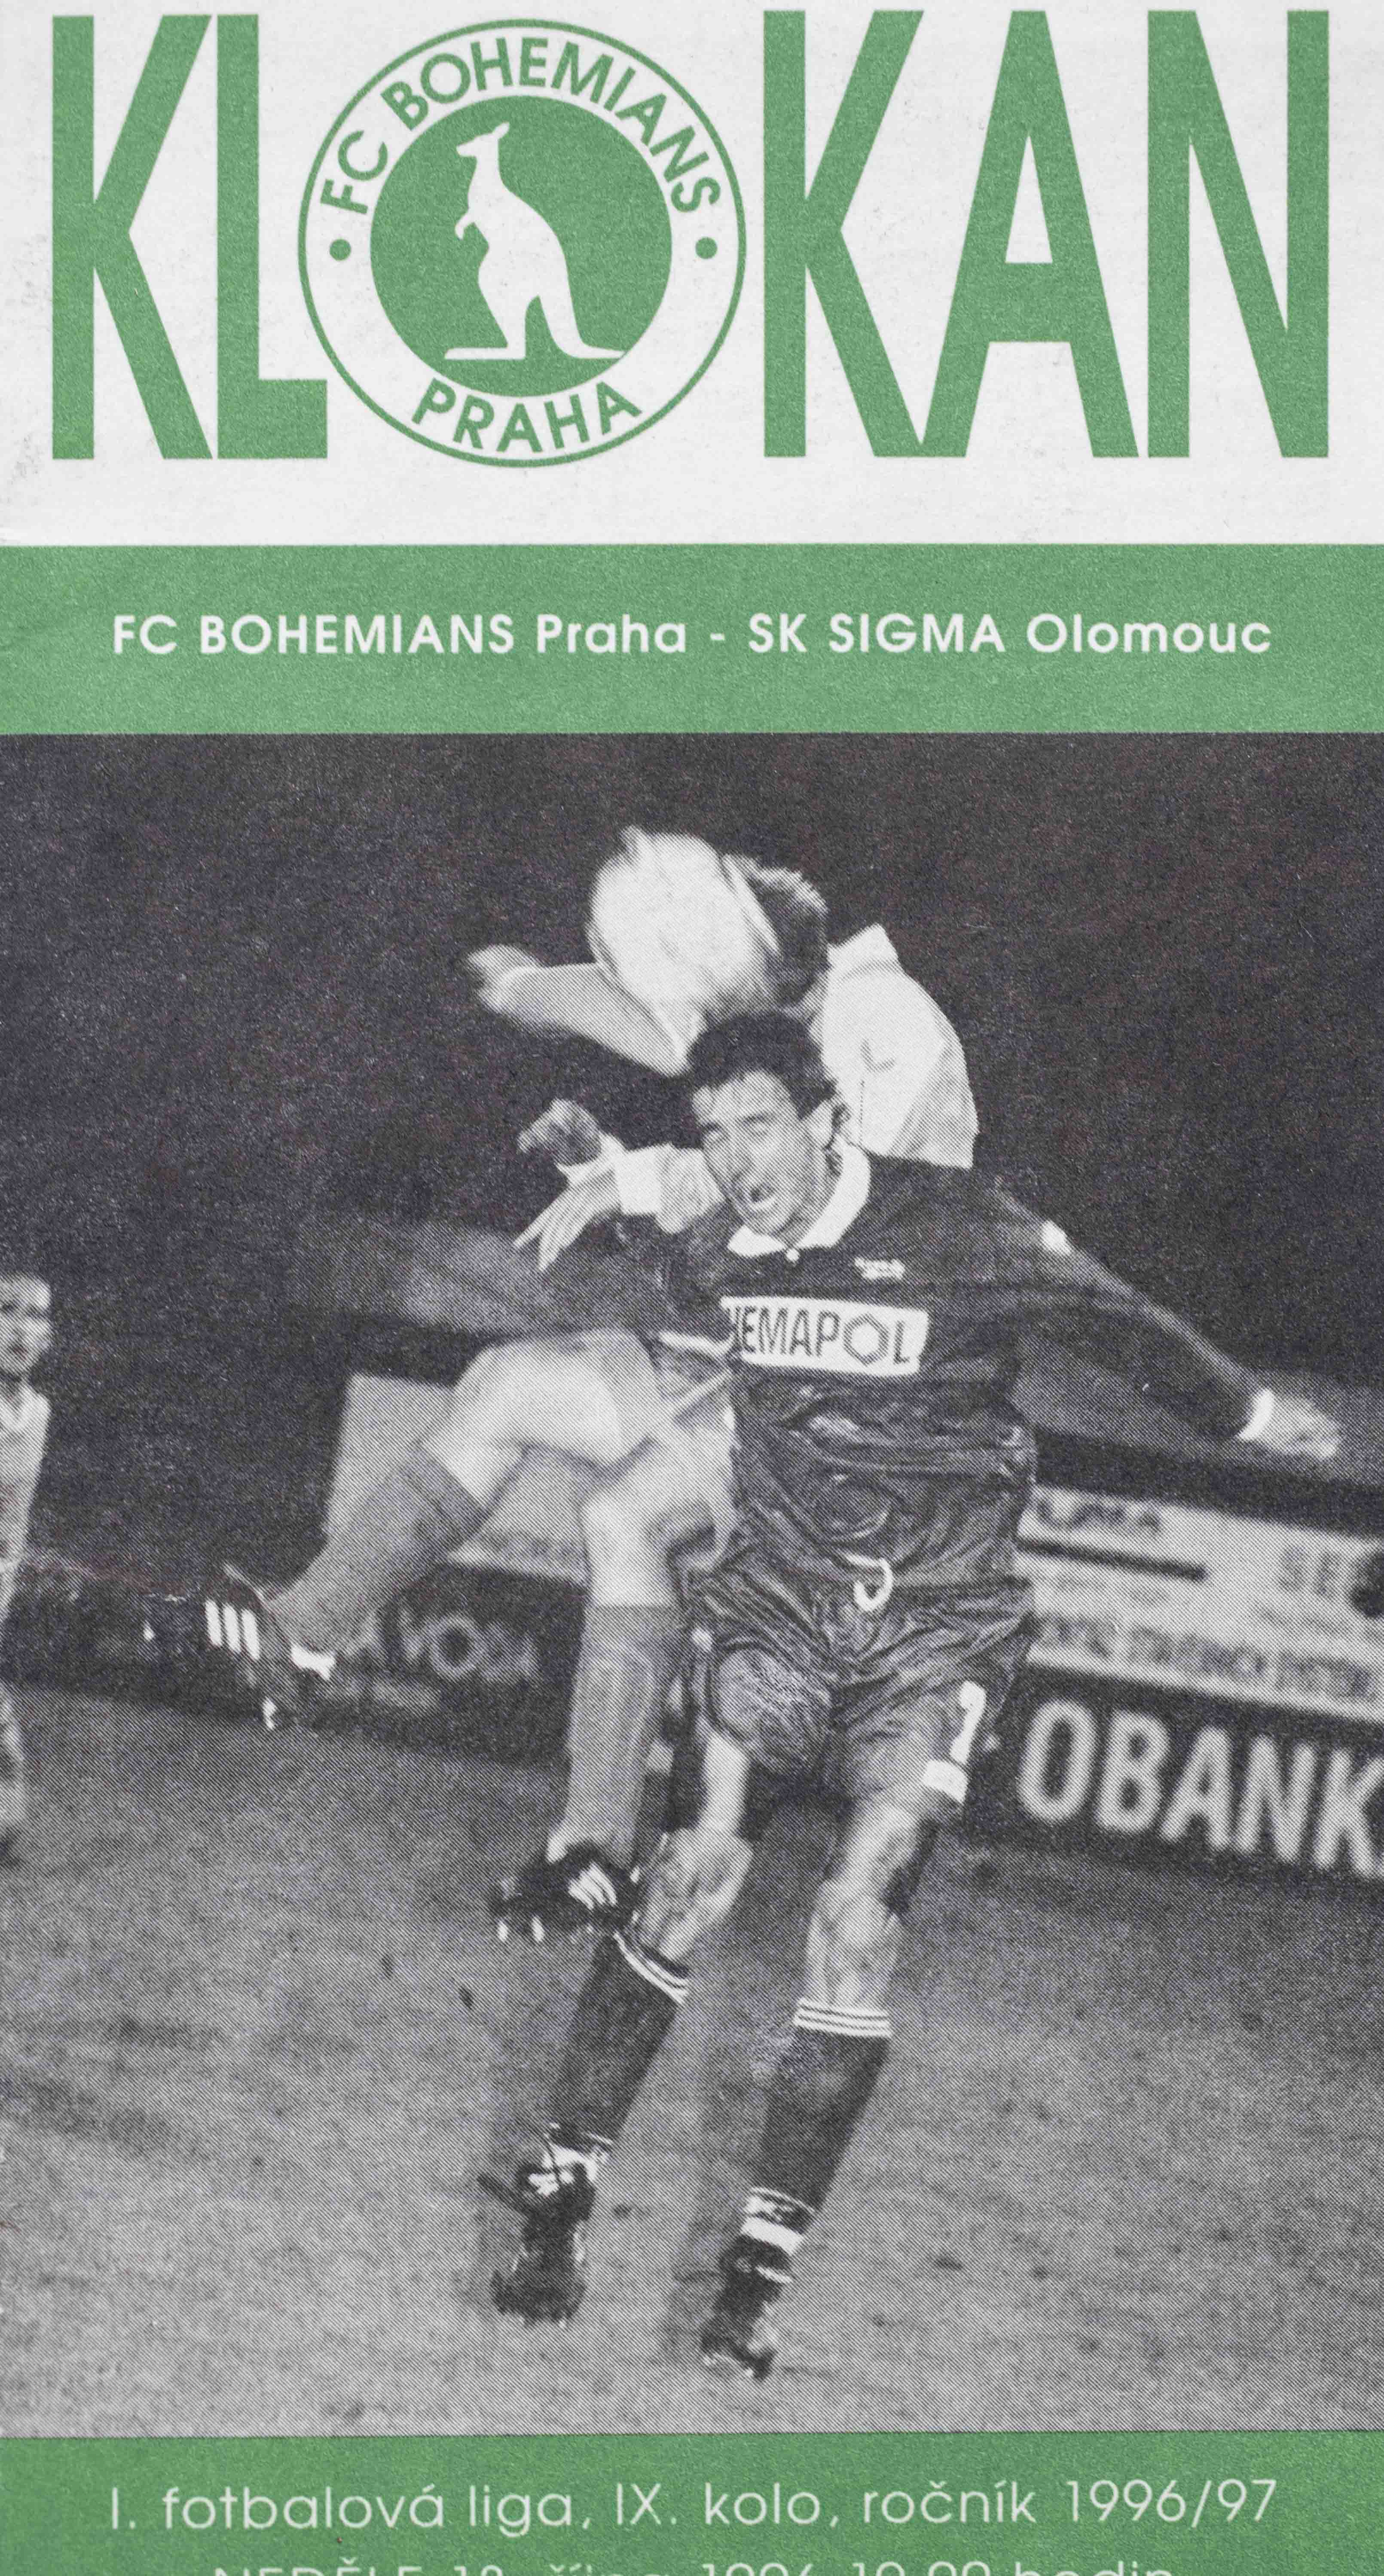 Program Klokan, FC Bohemians Praha v. SK Sigma Olomouc, 1996/97